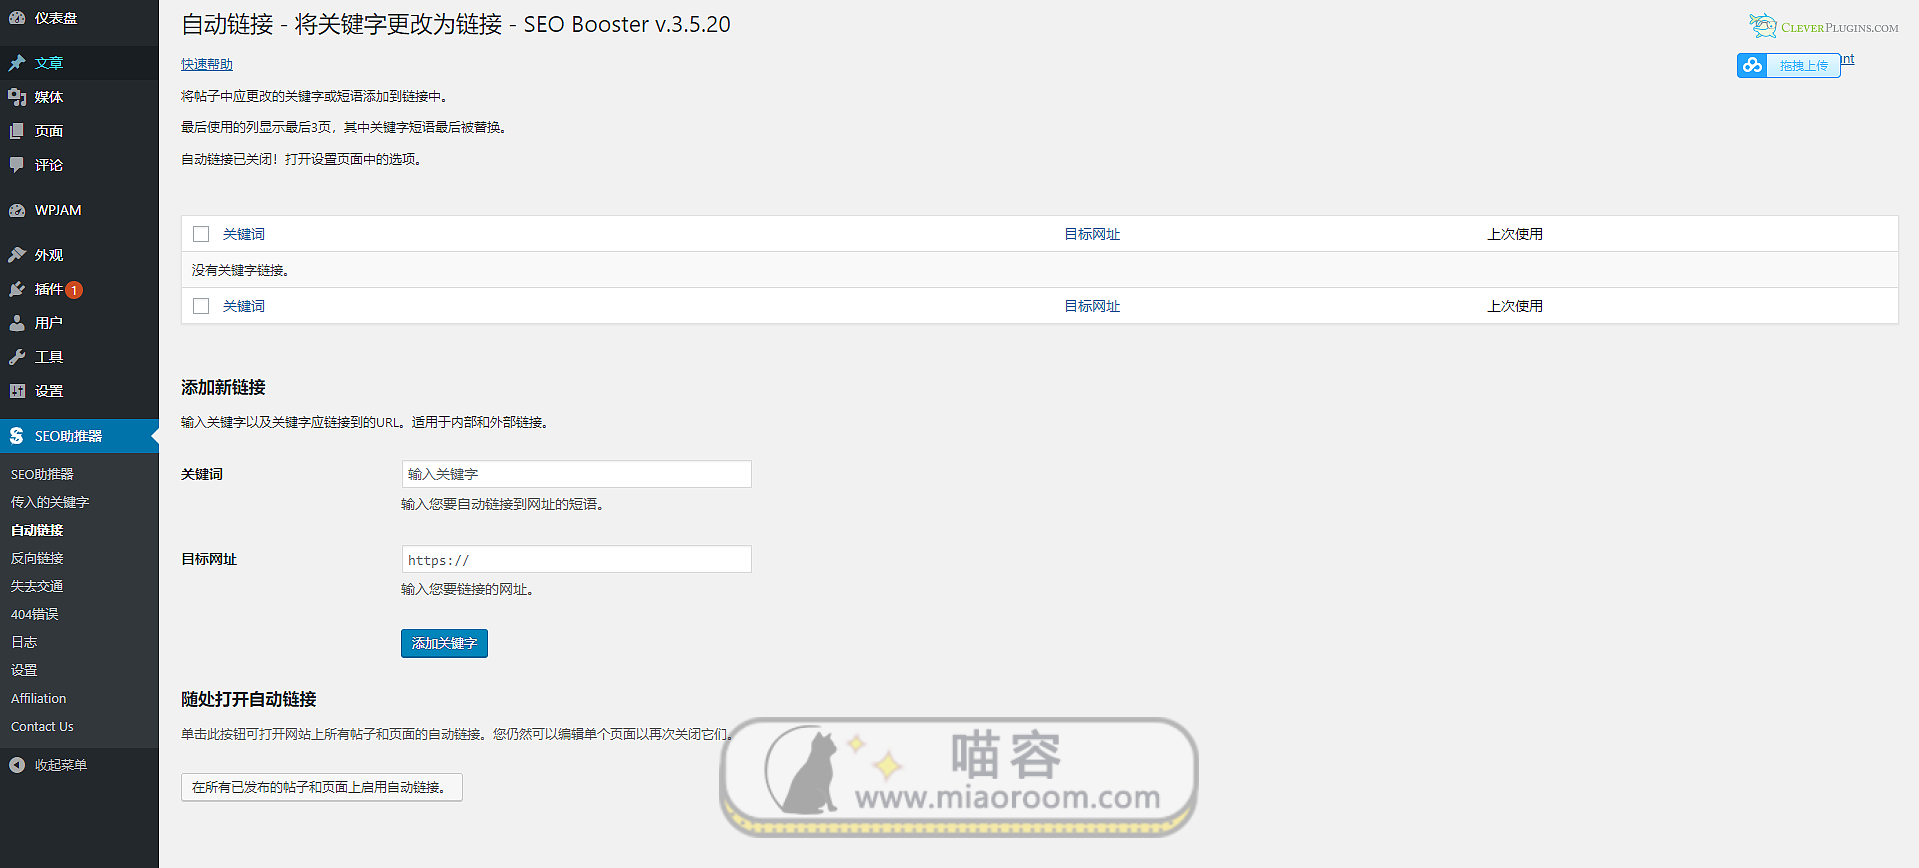 「WP插件」 SEO Booster Premium v3.5.27 专业版+破解+中文汉化 【已更新】